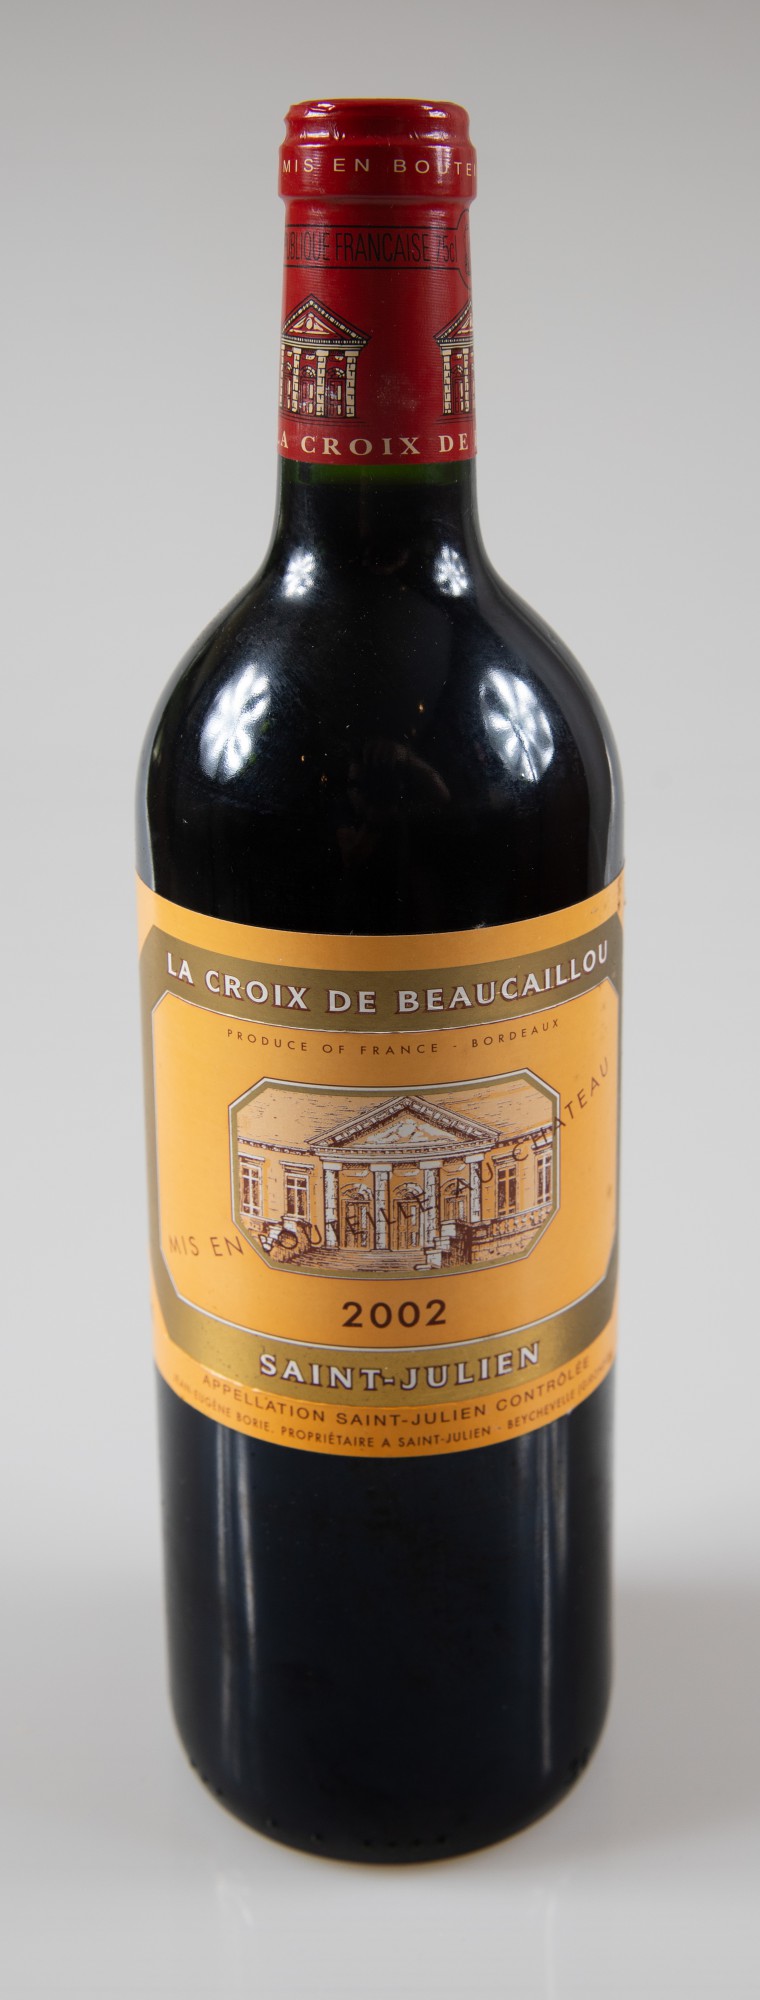 Vinho - Château La Croix de Beaucaillou , Saint-Julien, Bordeaux, Vinho tinto